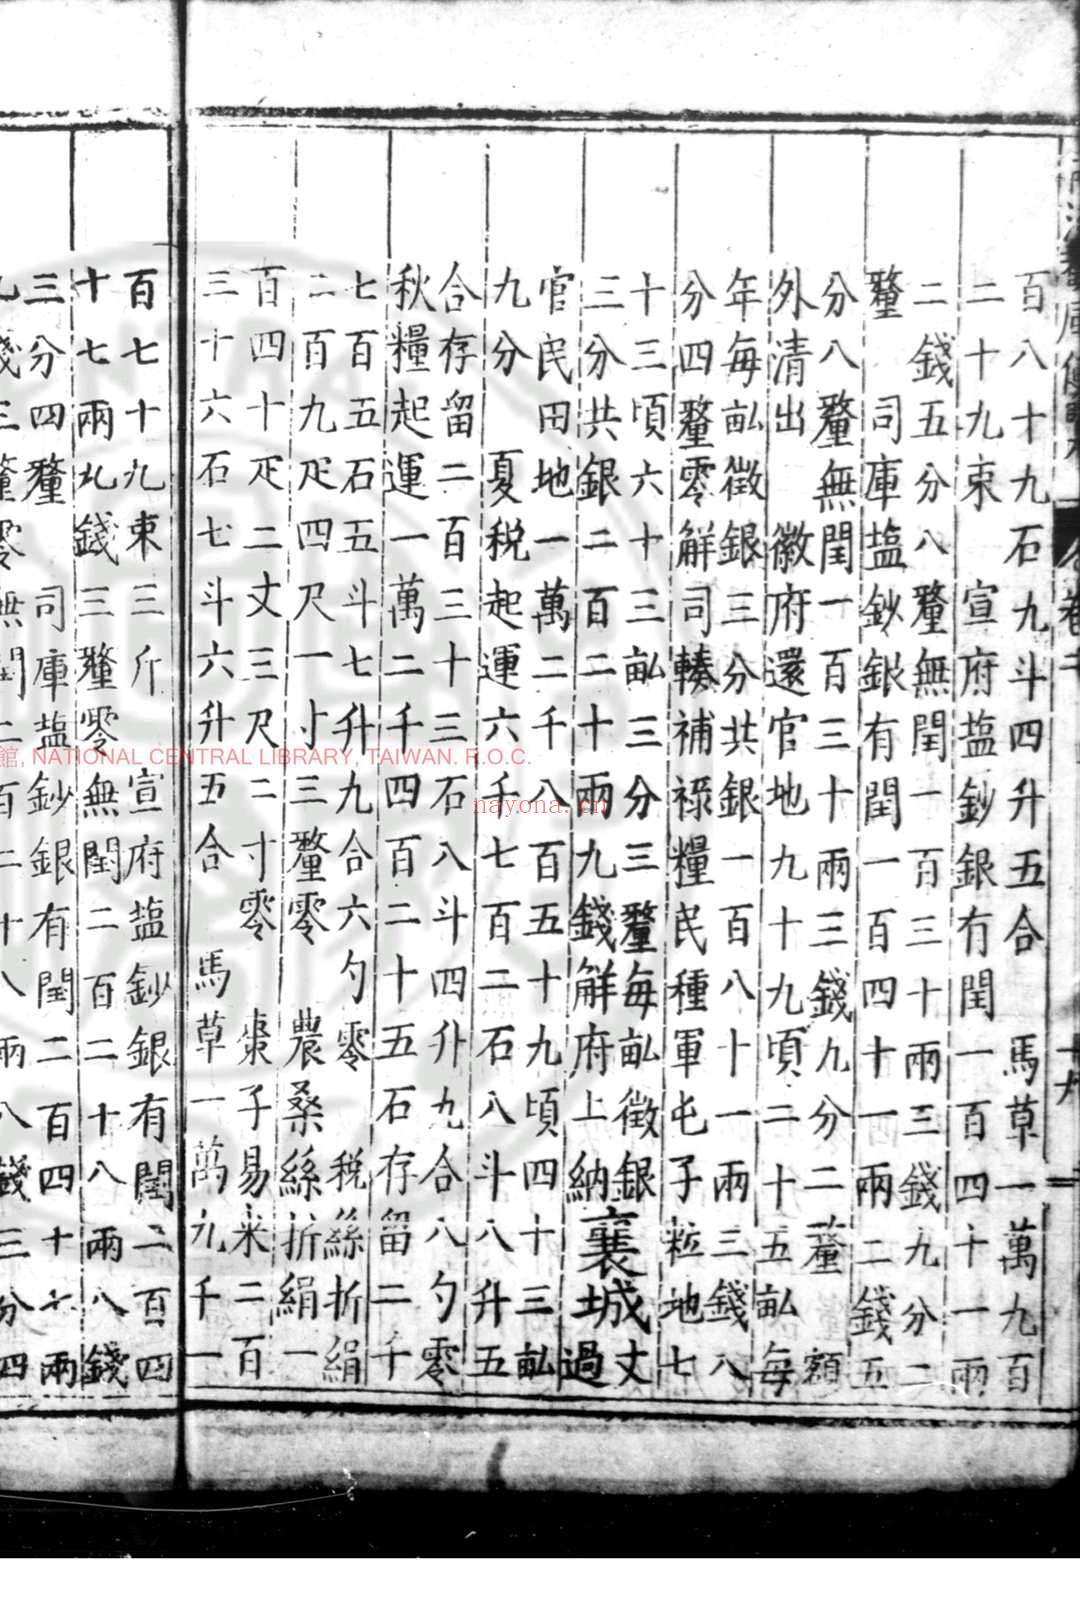 两河观风便览 (明)不着撰人 明万历间(1573-1620)刊本